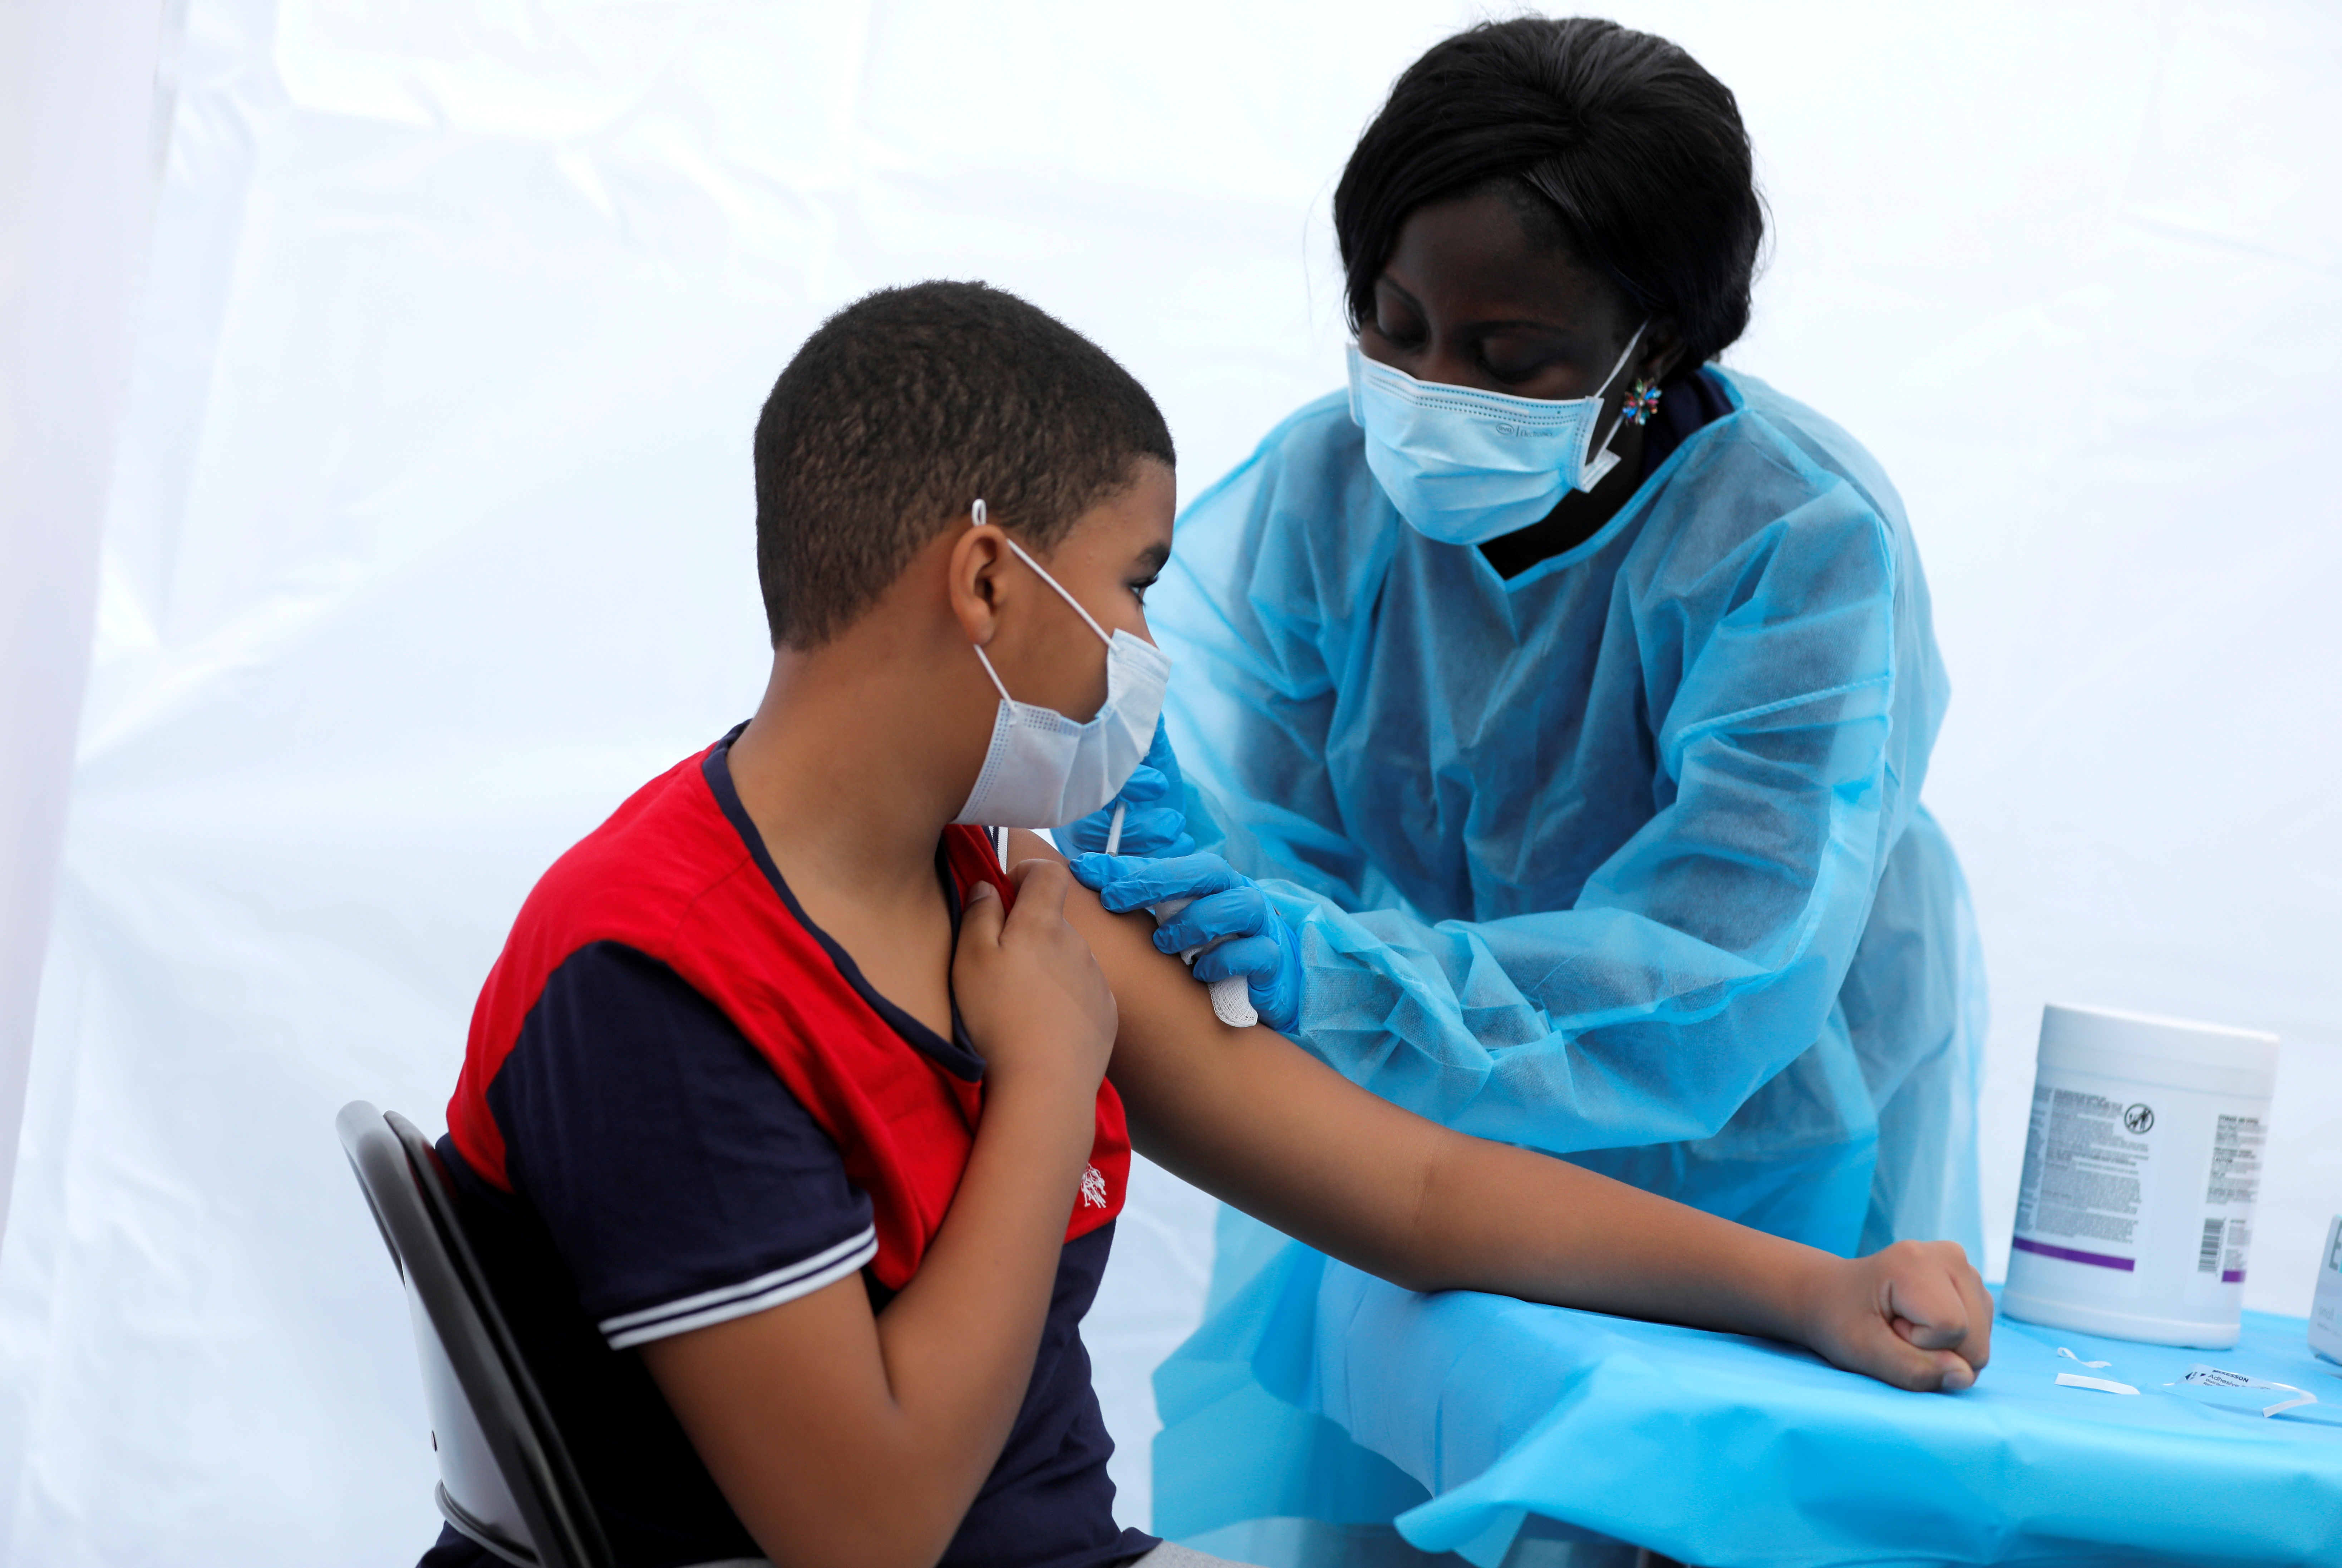 Justing Concepcion, de 12 años, recibe una dosis de la vacuna de Pfizer-BioNTech en el Bronx de Nueva York, el 4 de junio de 2021 (REUTERS/Mike Segar/File Photo)